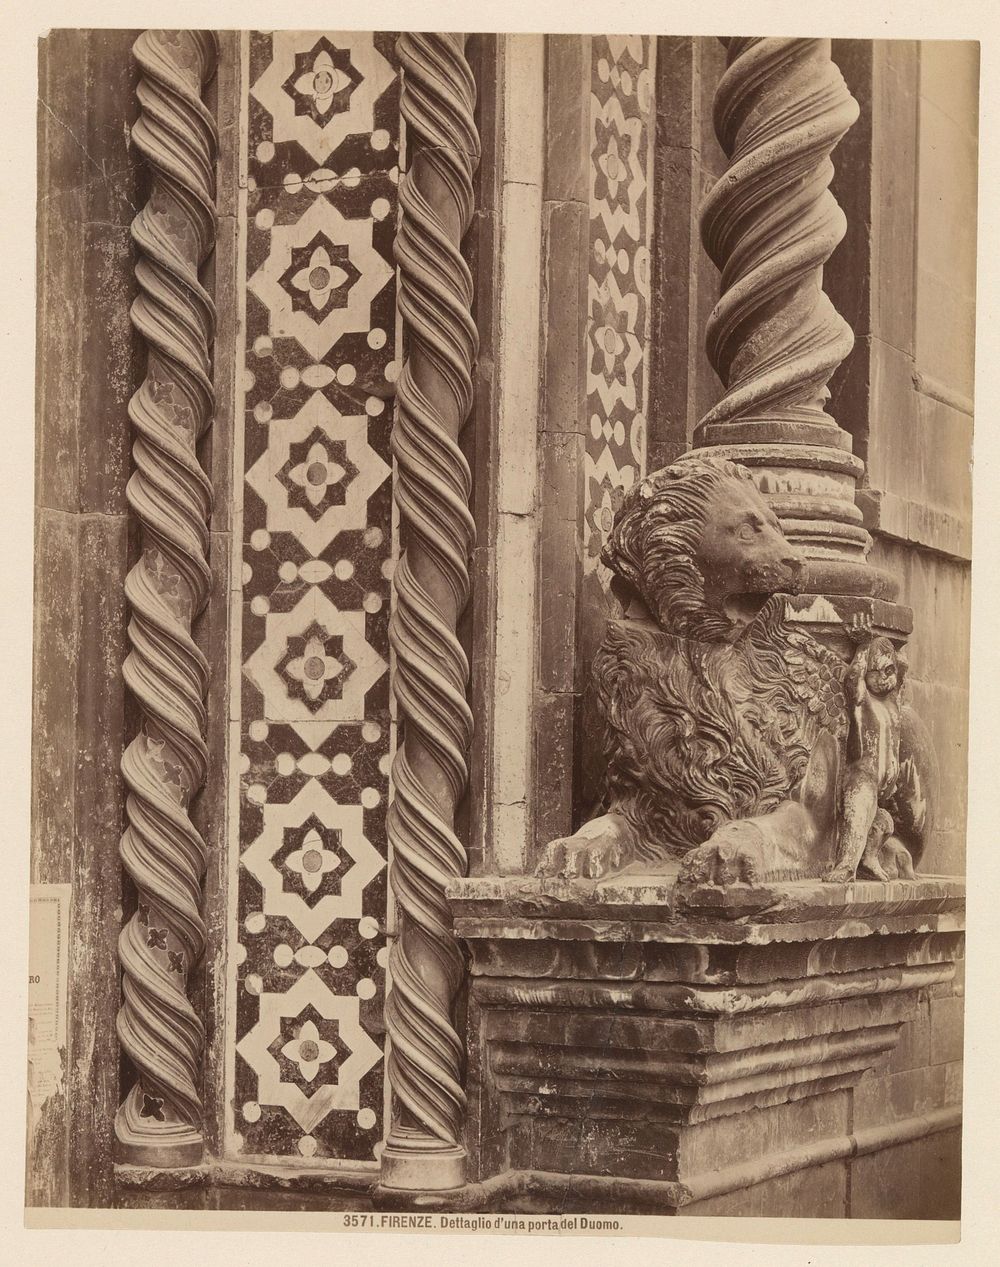 Deel van een portaal van de Dom van Florence (c. 1870 - c. 1875) by Alinari